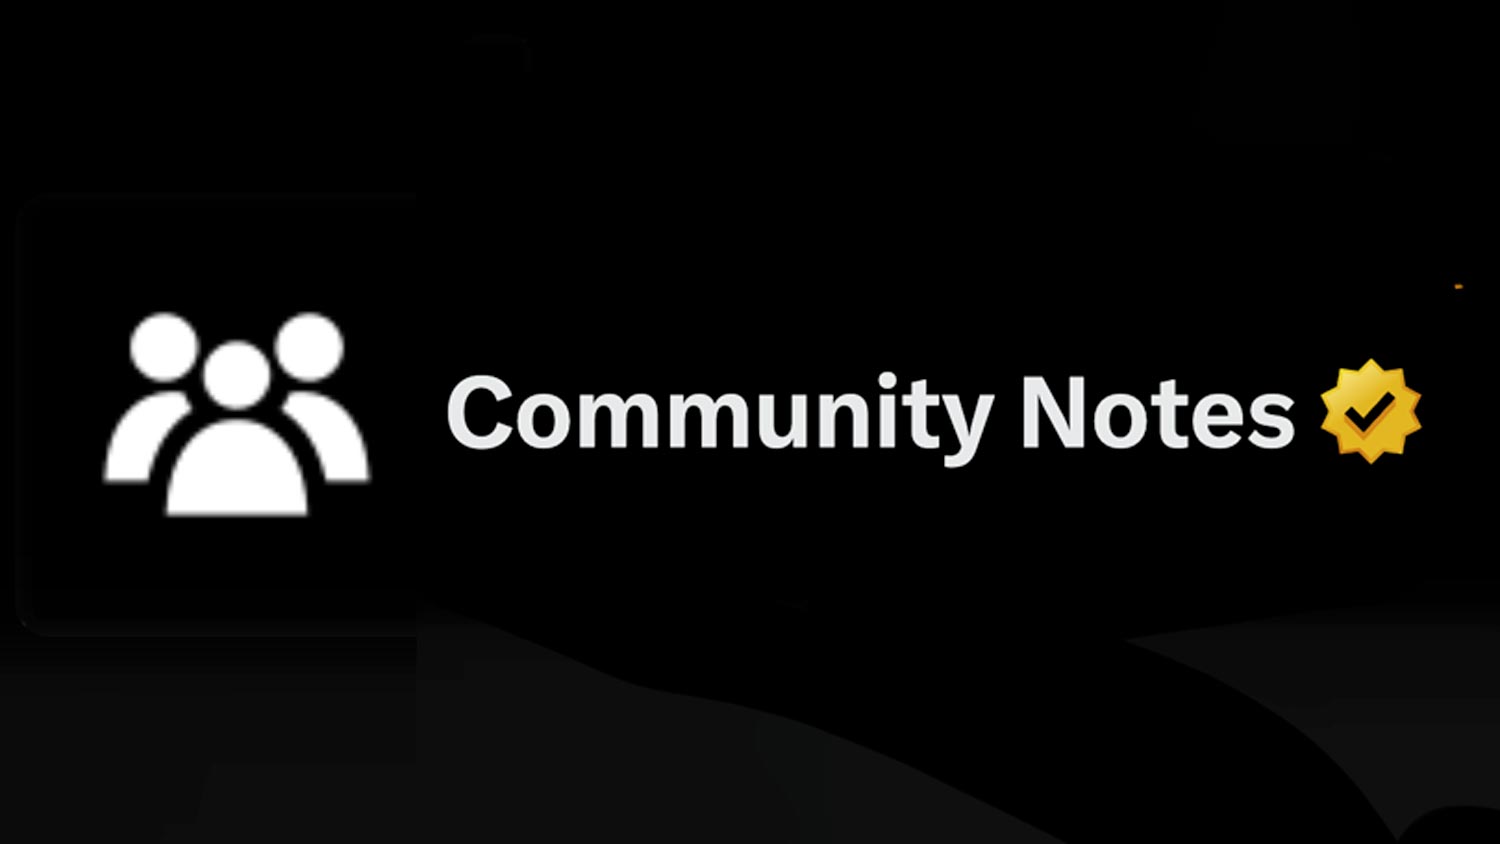 Community Notes Di X Kini Dipaparkan Juga Pada Video